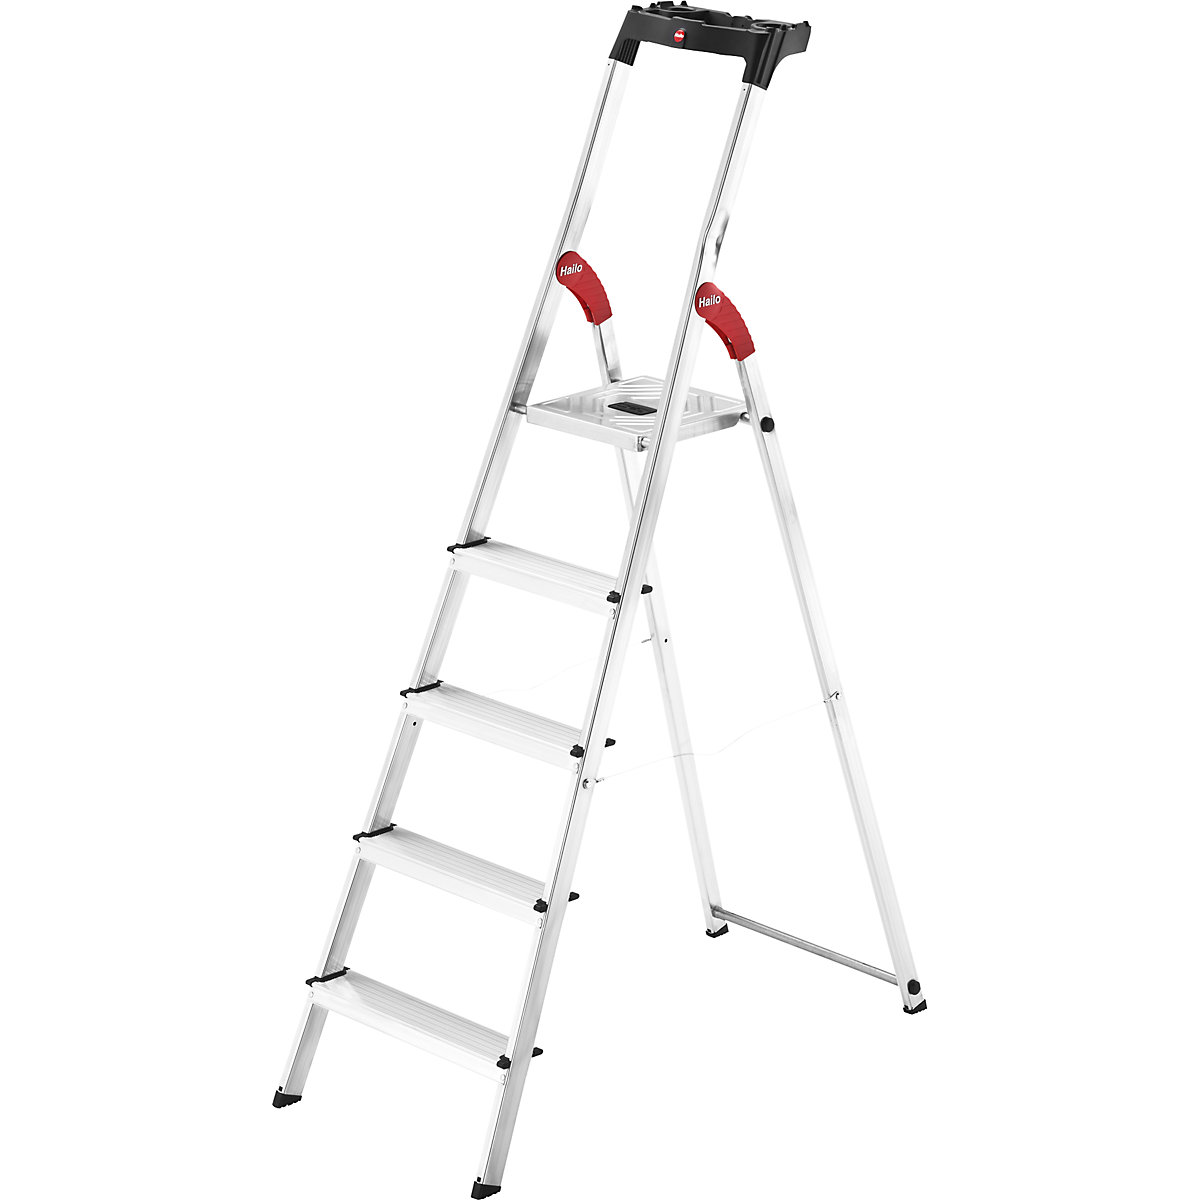 Aluminijasta dvokraka lestev s stopnicami StandardLine L60 – Hailo, nosilnost 150 kg, 5 stopnic-10